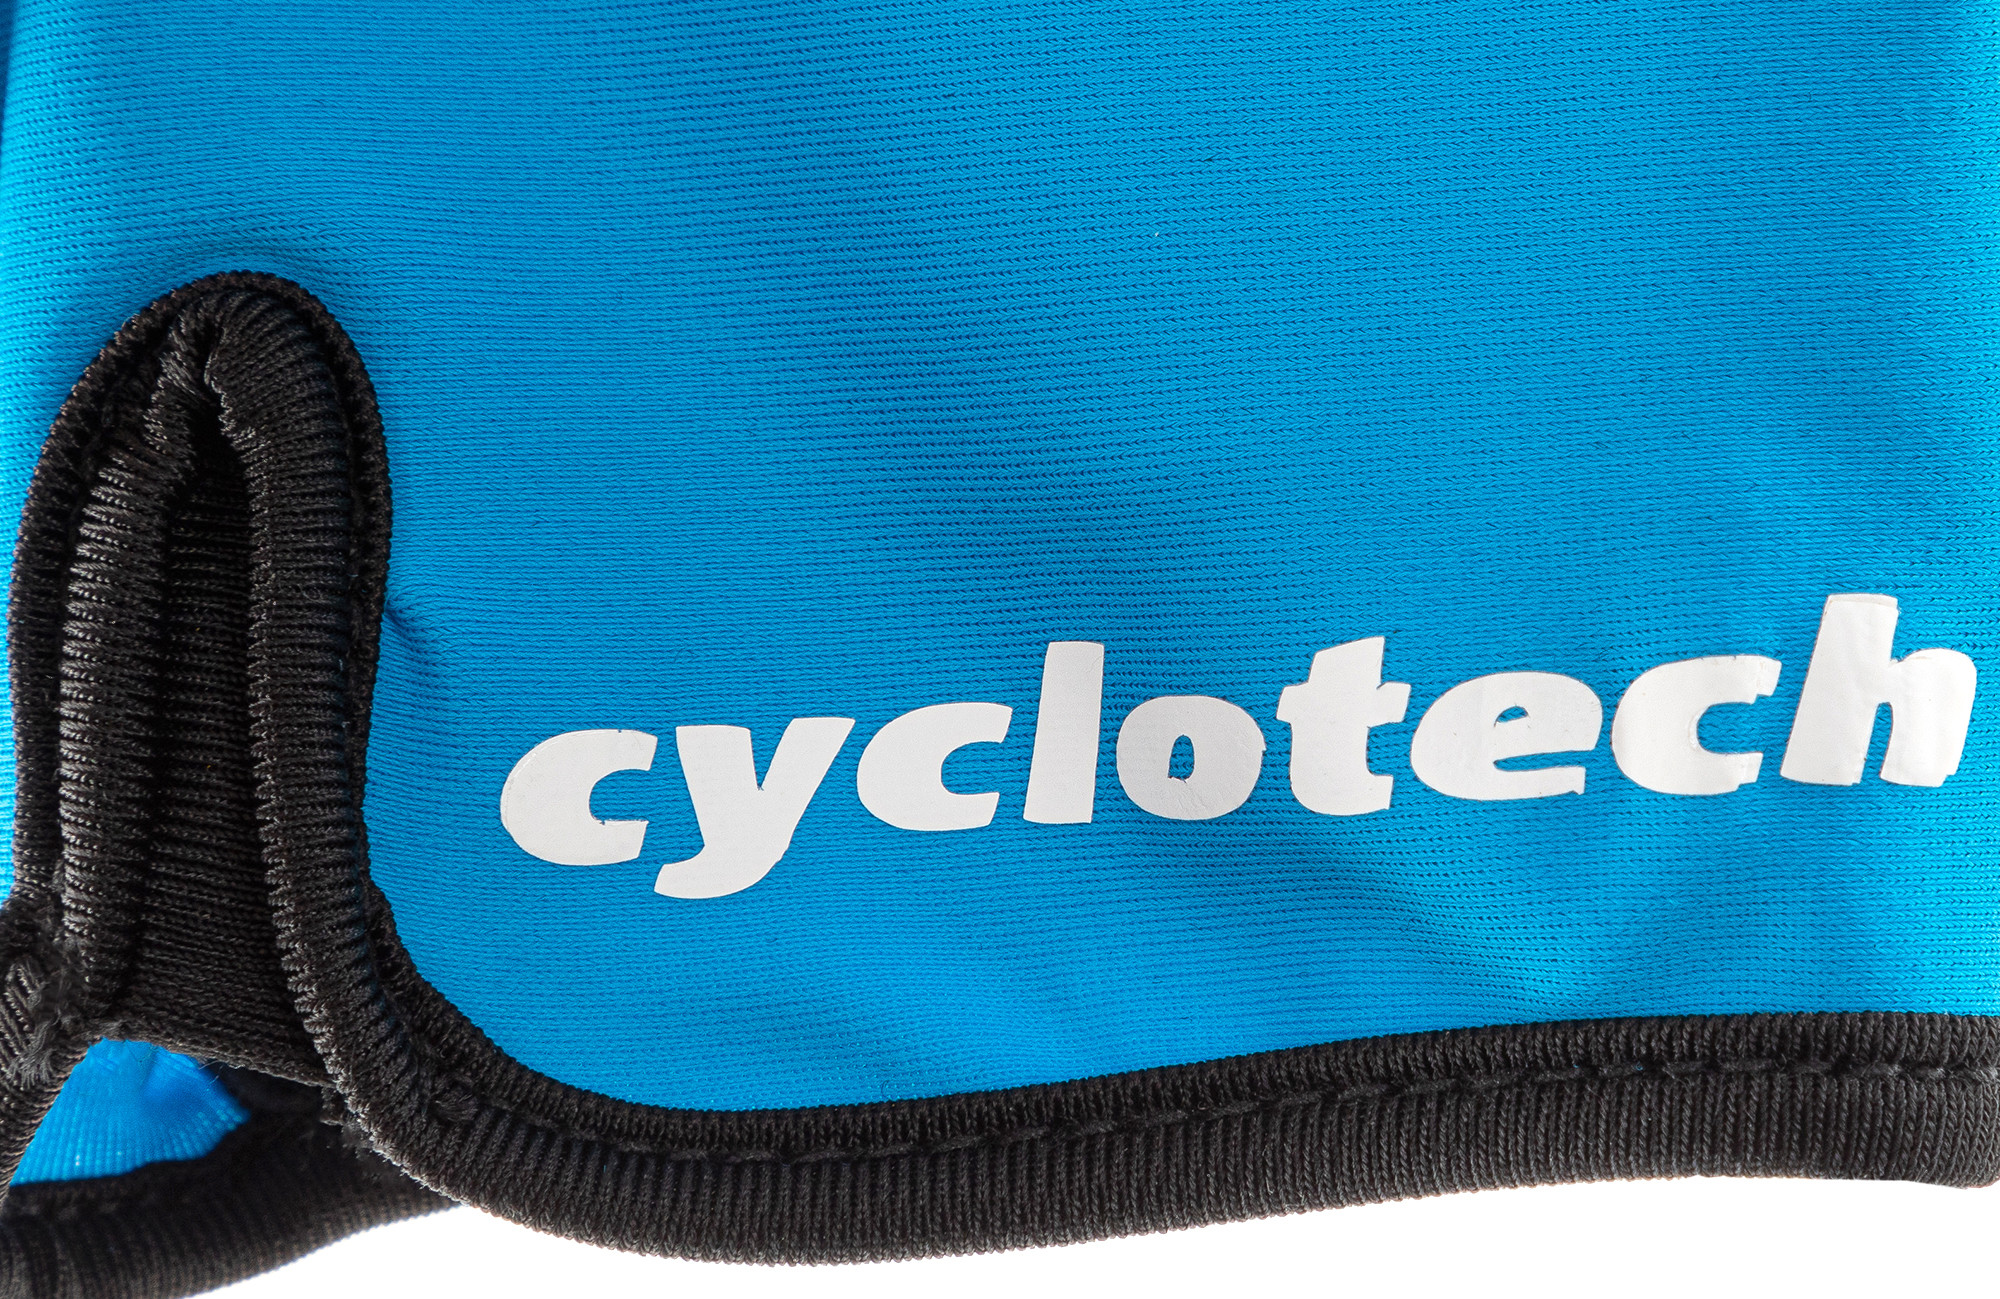 Перчатки велосипедные Cyclotech WIND-B